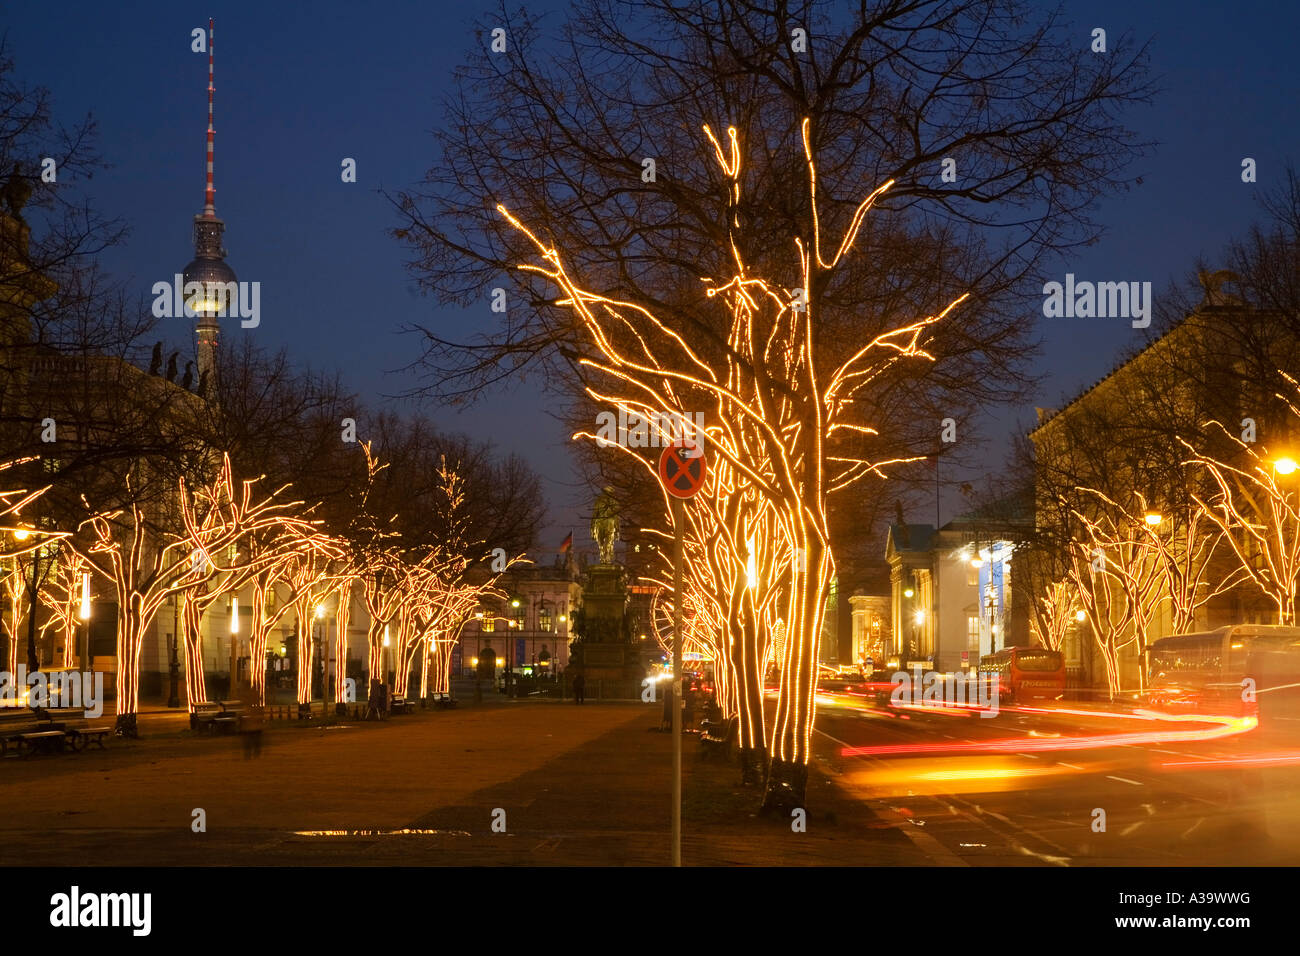 Berlin Brandenburger Tor christmas illumination Weihnachtsbeleuchtung unter den Linden Stock Photo